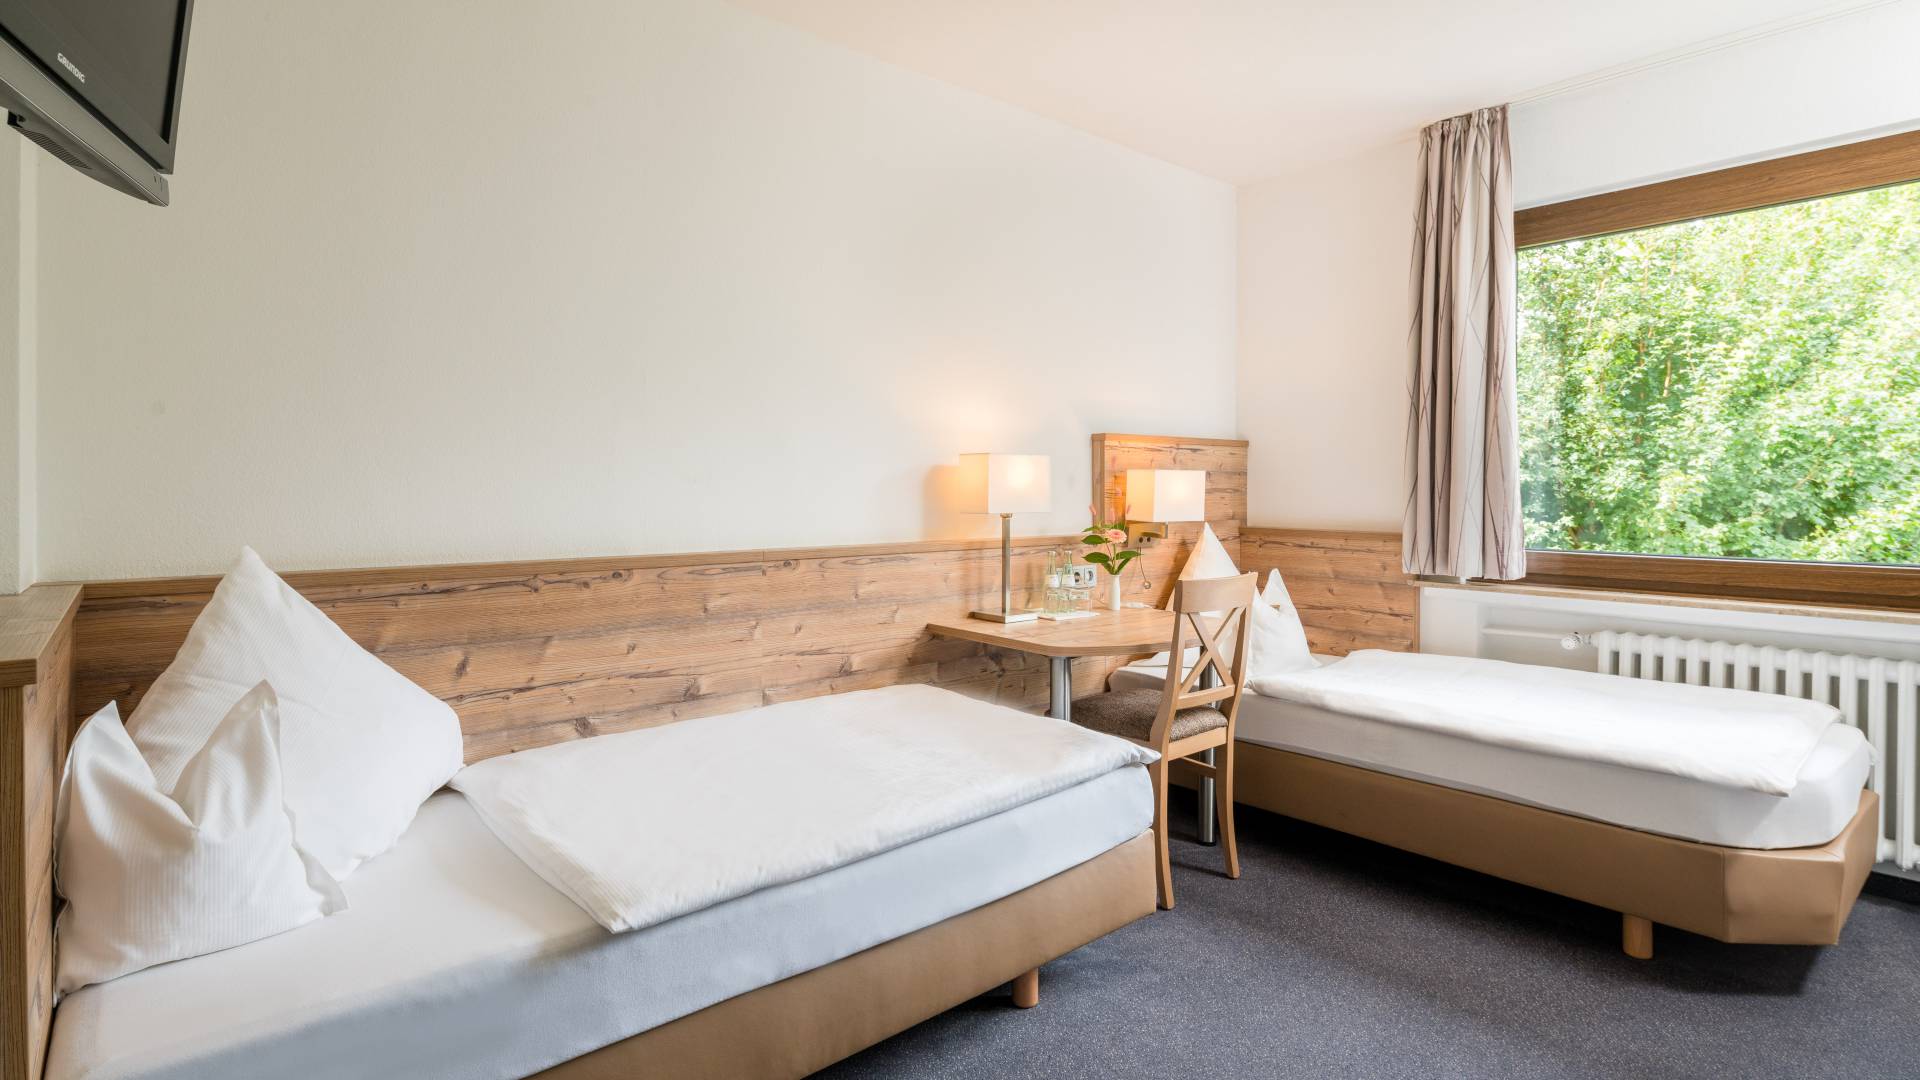 Zimmer mit Schreibtisch und Ausblick,Hotel Nussbaum, Ratingen-Hösel